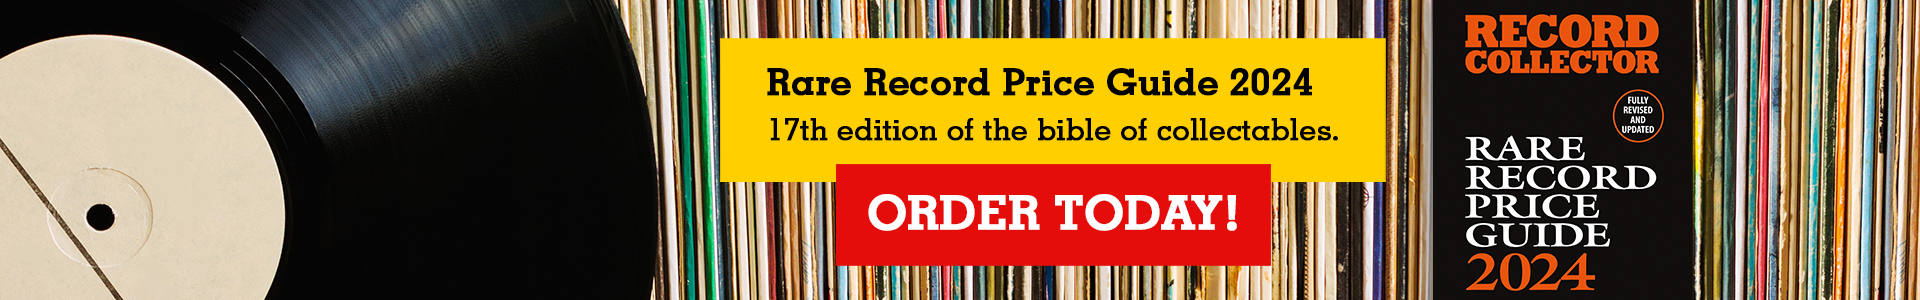 Rare Record Price Guide 2024